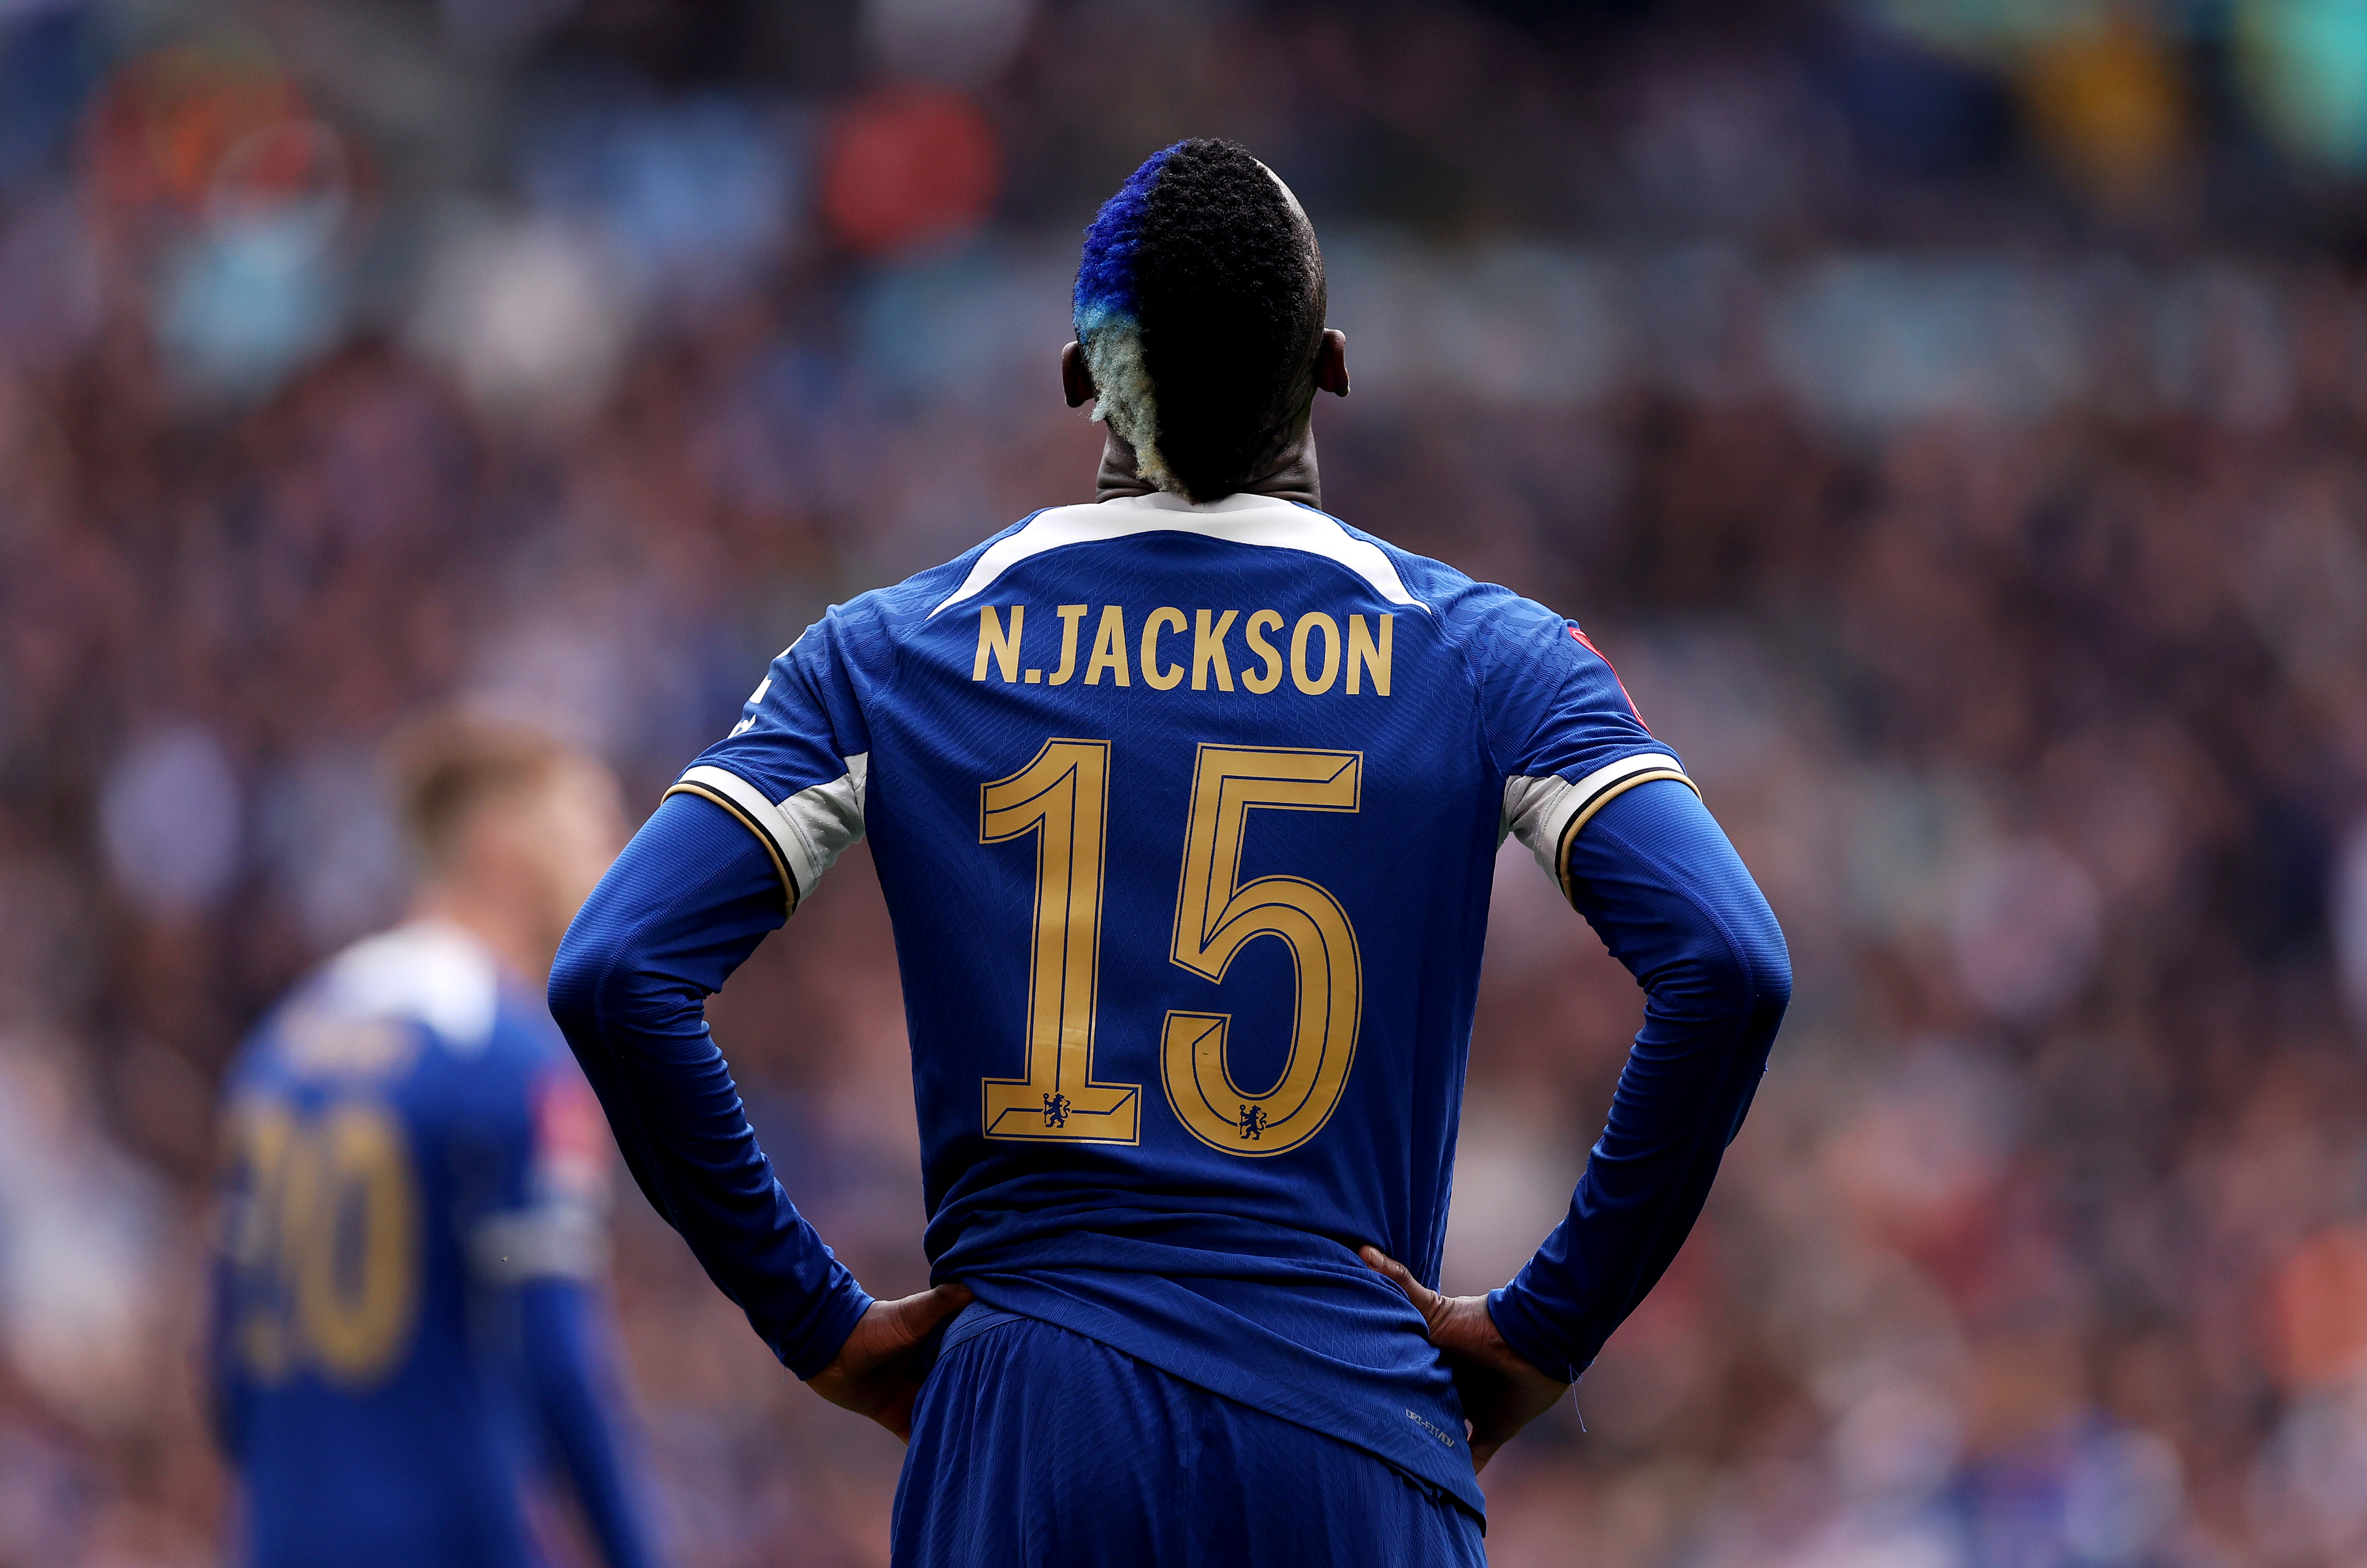 Nicolas Jackson - Chelsea - Premier League